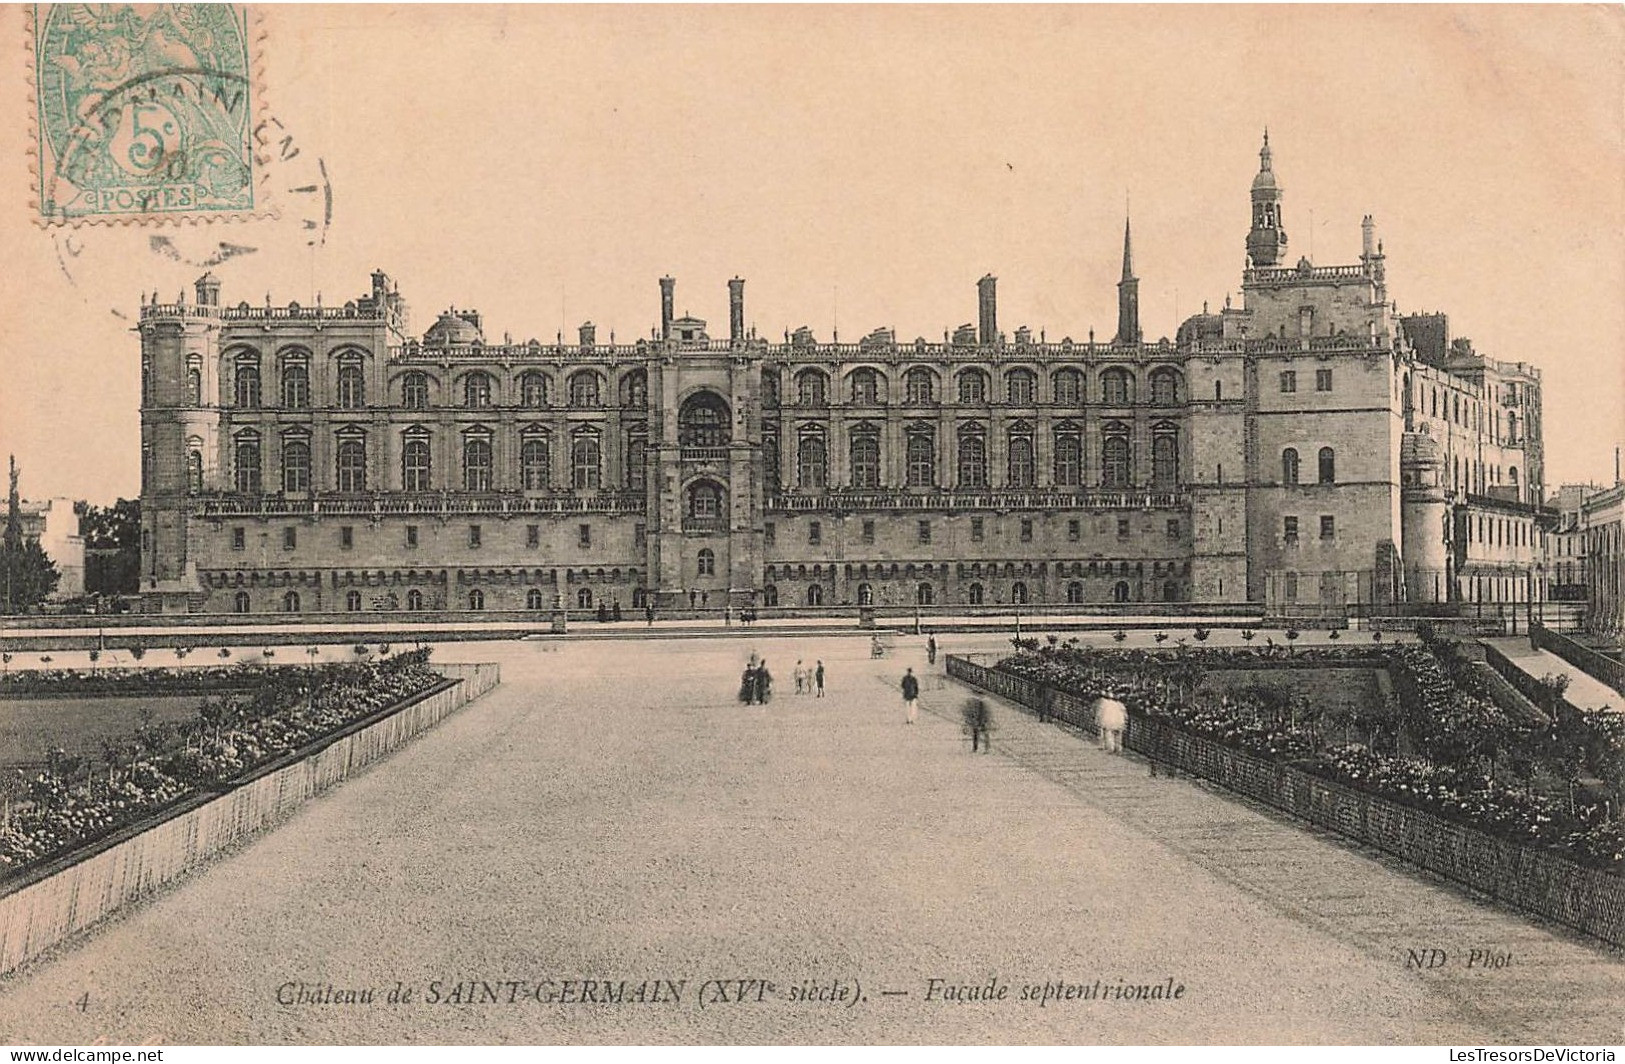 FRANCE - Château De Saint Germain (XVIè Siècle) - Façade Septentoriale - Animé - Carte Postale Ancienne - St. Germain En Laye (Castillo)